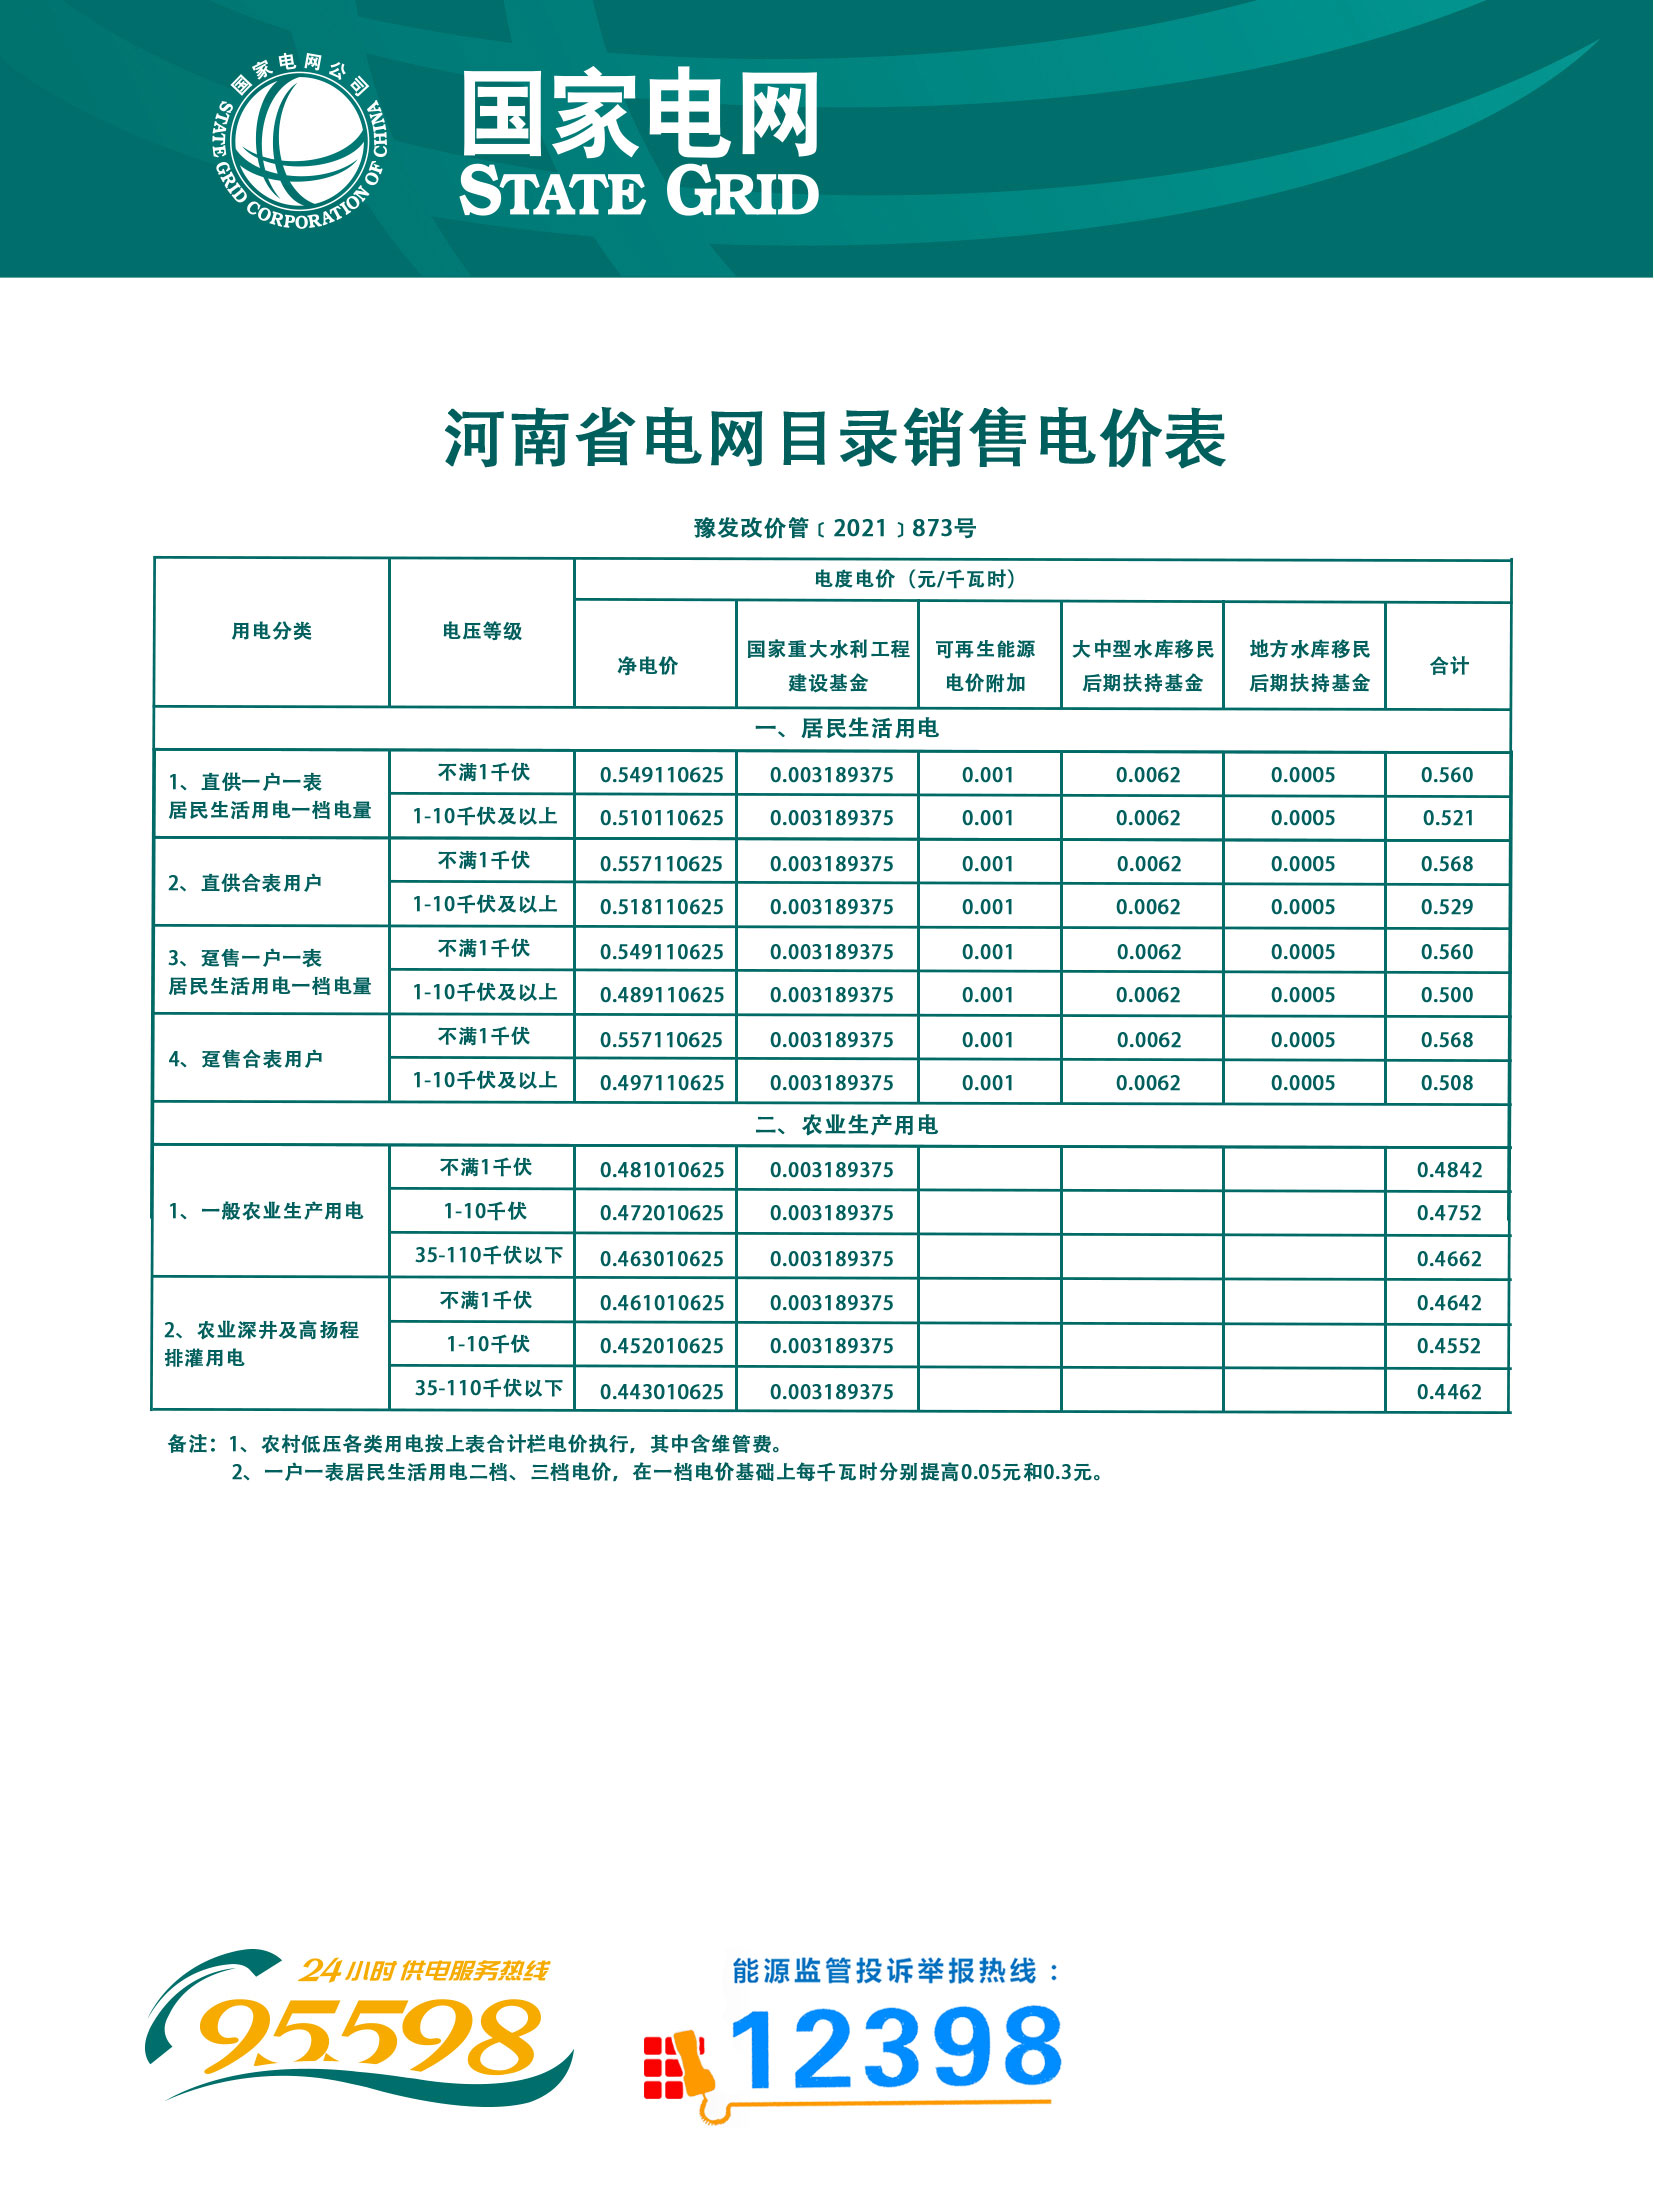 8.河南省电网销售电价表（豫发改价管〔2021〕873号）.jpg